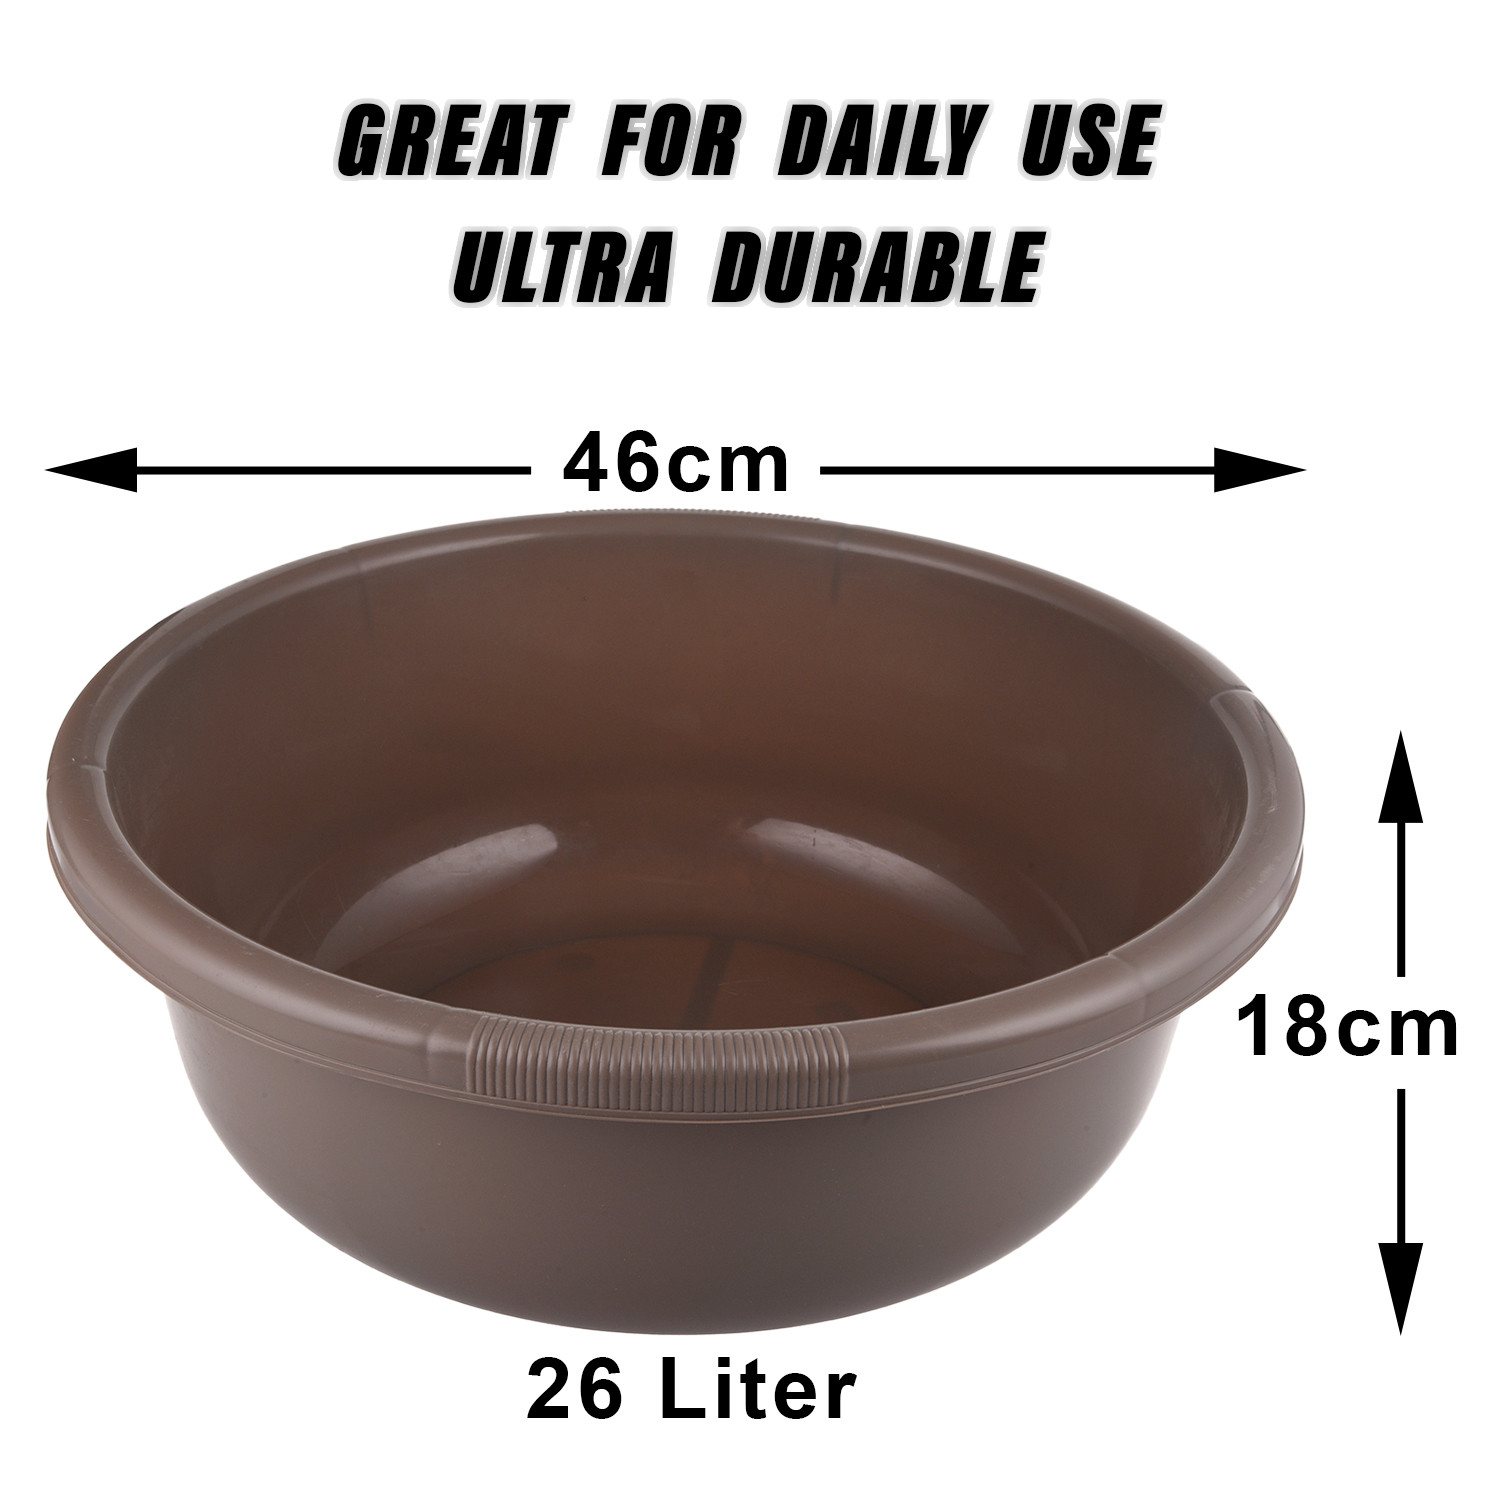 Kuber Industries Bath Tub|Versatile Plastic Utility Gaint Tub|Durable Deep Tub for Baby Bathing|Washing Clothes|Feeding Pan|26 Liter (Coffee)